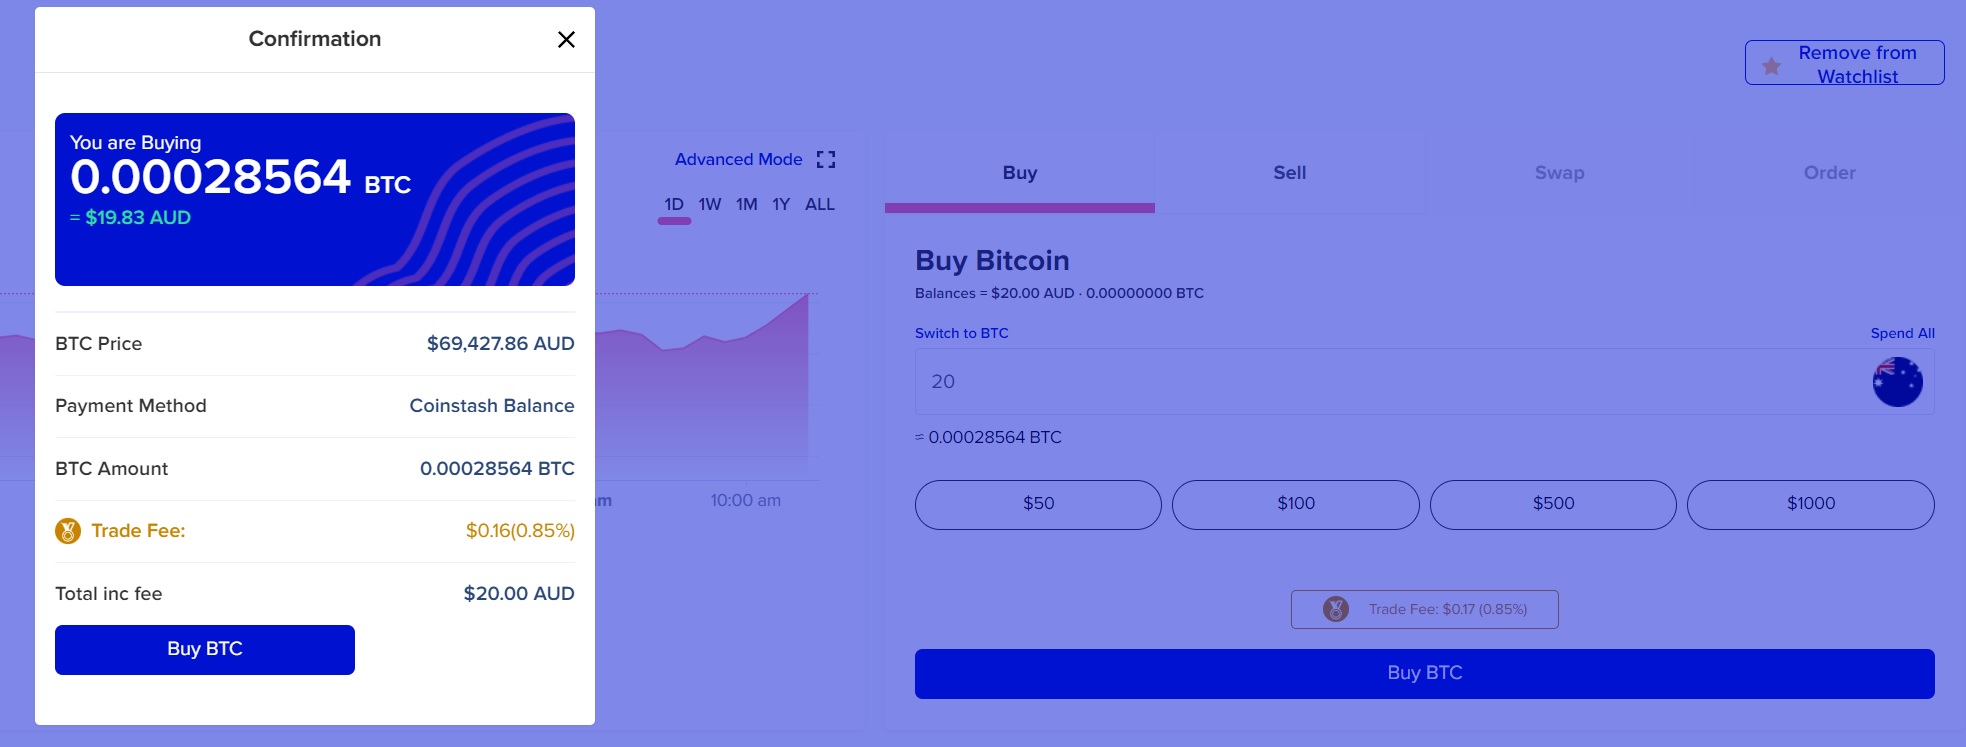 coinstash buy bitcoin with aud